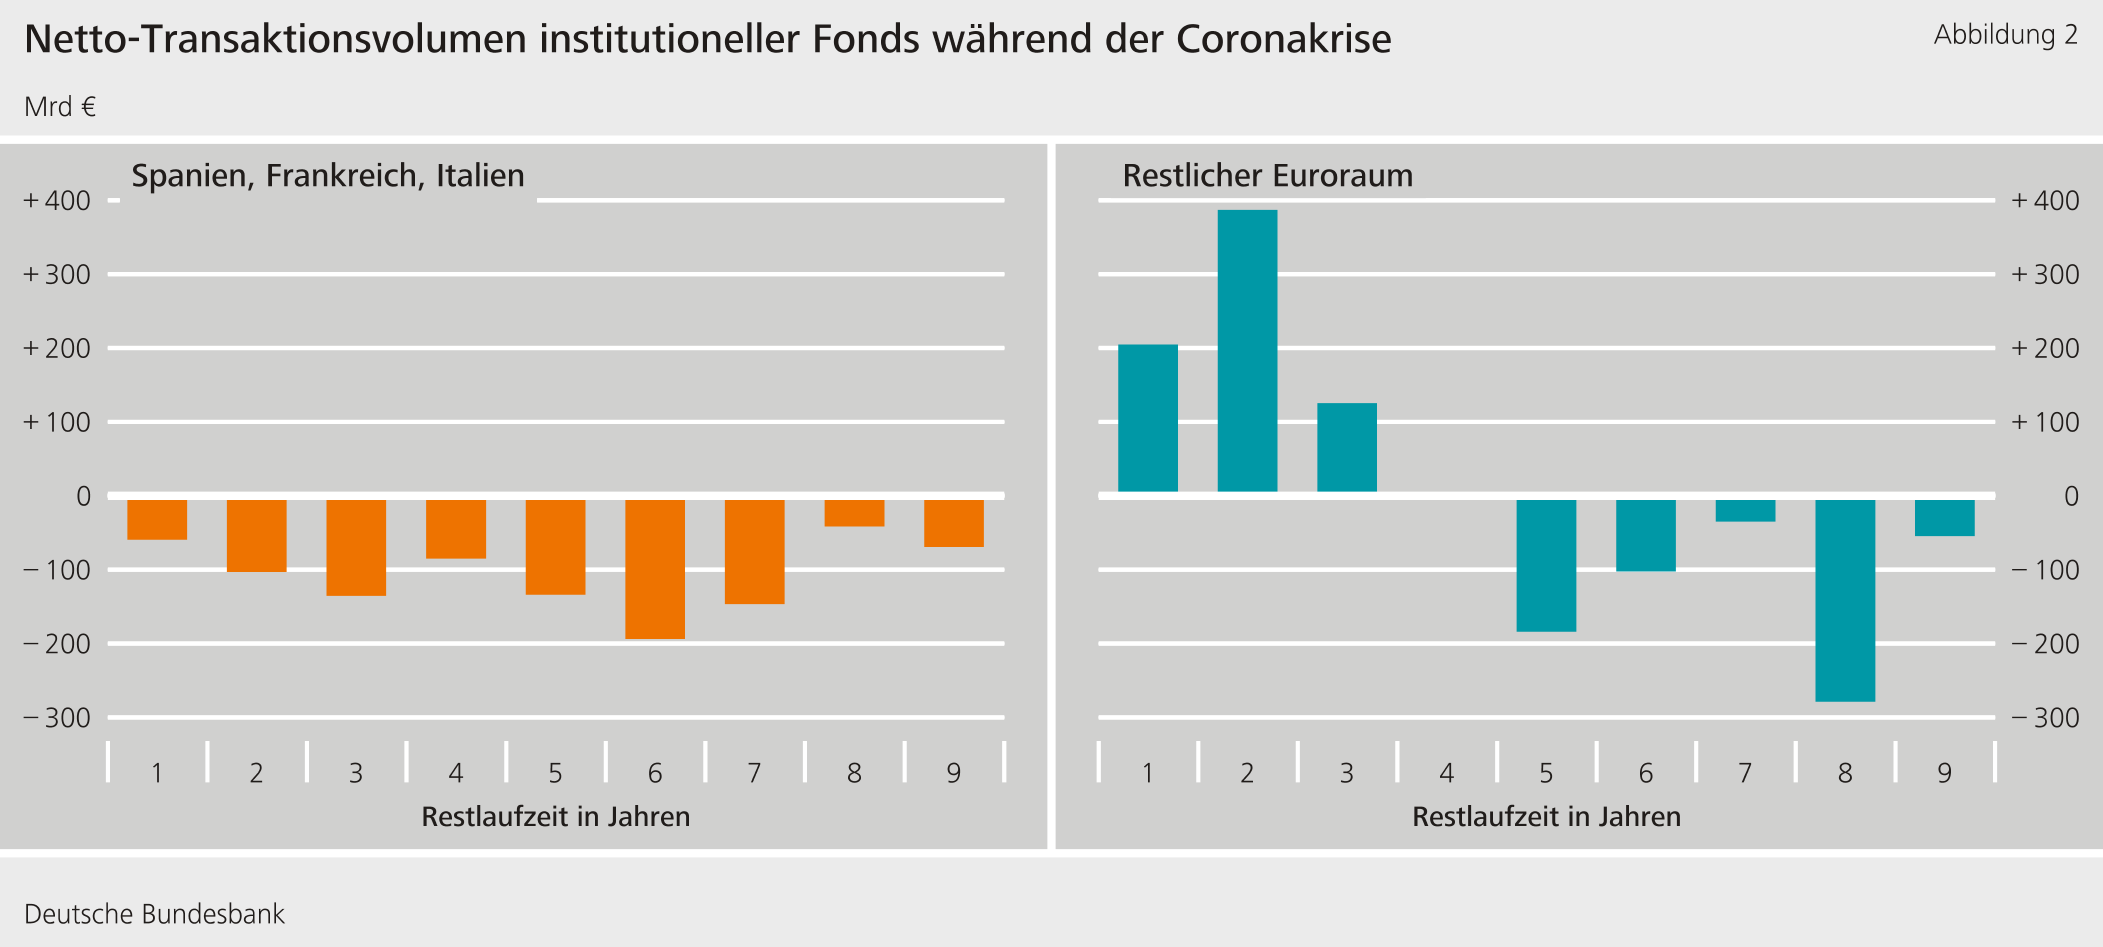 Abbildung 2: Netto-Transaktionsvolumen institutioneller Fonds während der Coronakrise